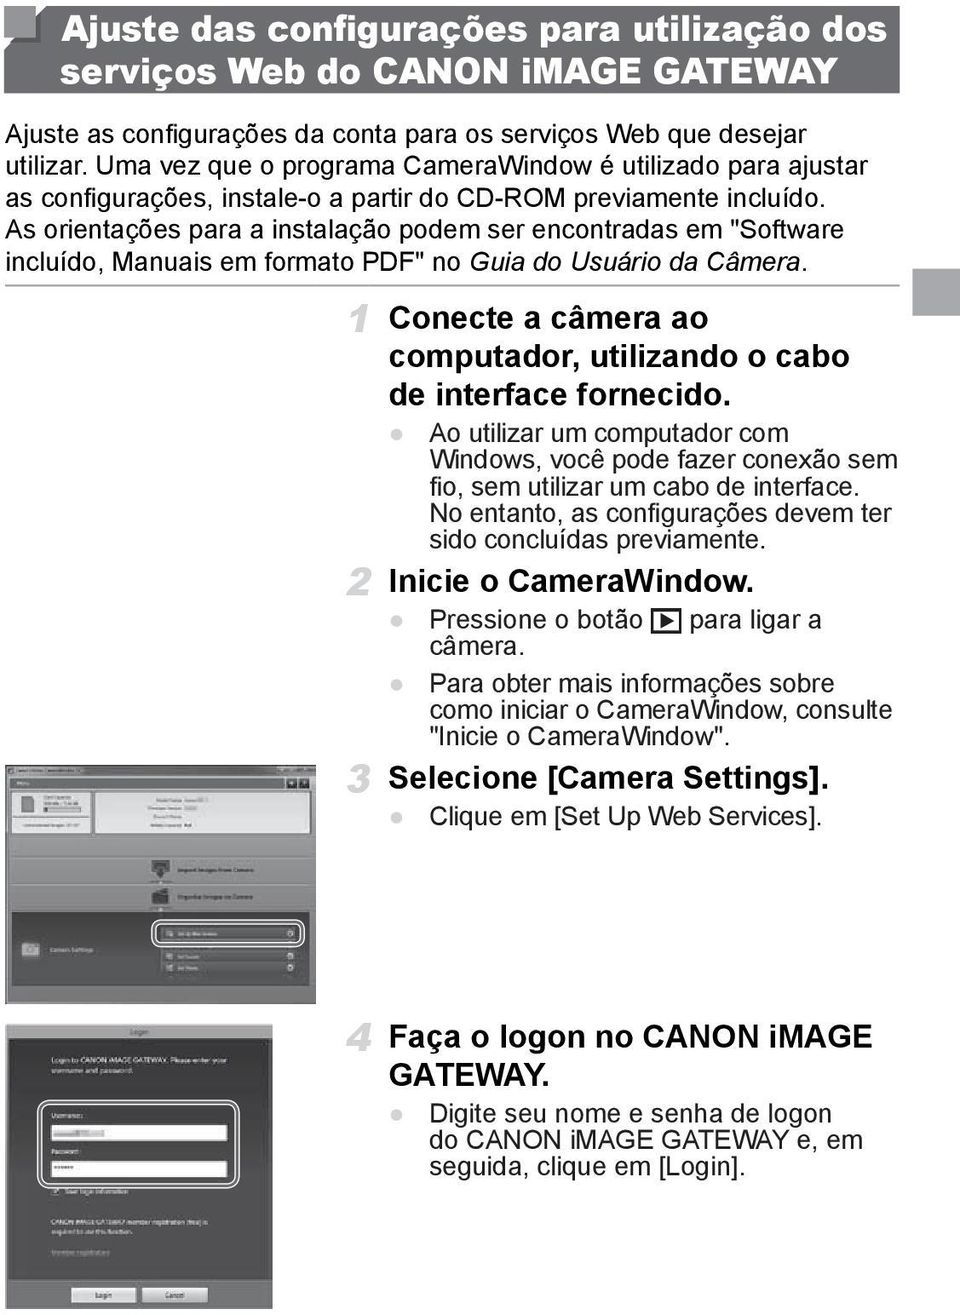 As orientações para a instalação podem ser encontradas em "Software incluído, Manuais em formato PDF" no Guia do Usuário da Câmera.